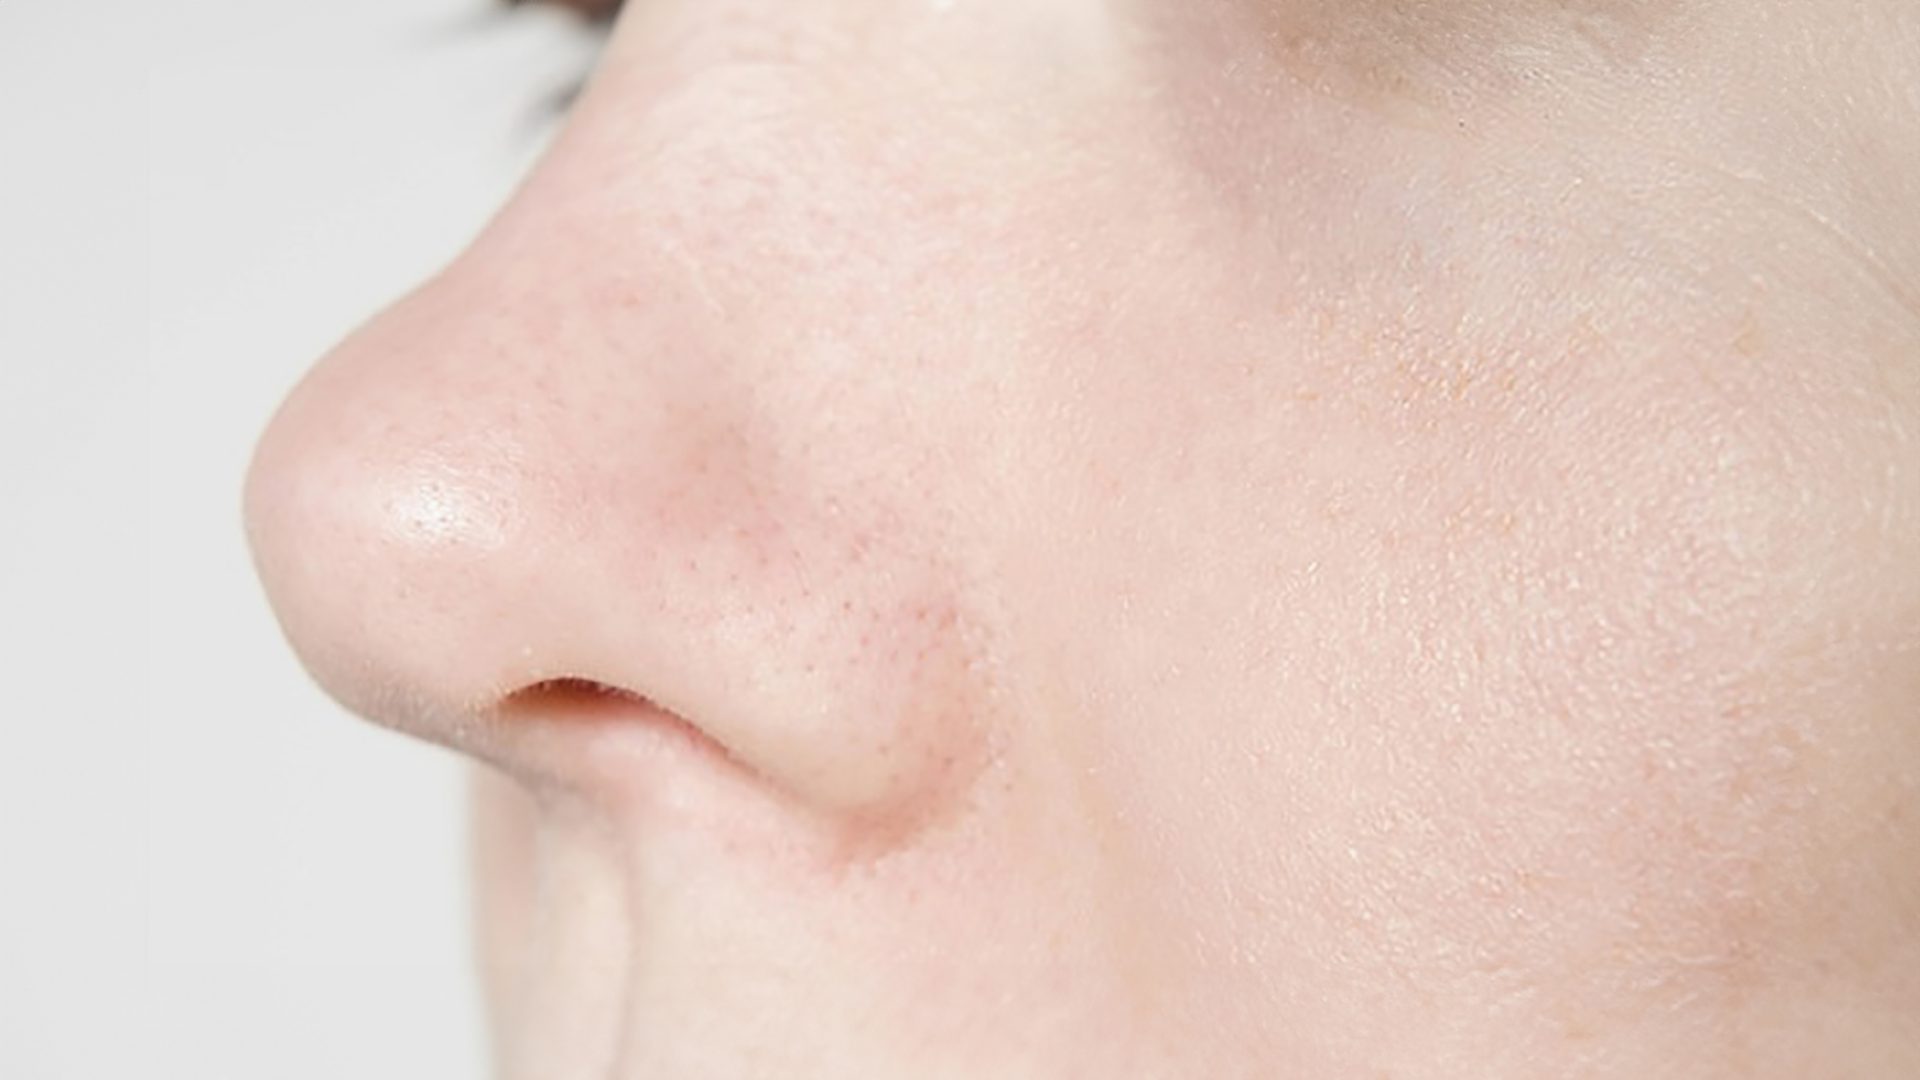 Comment reconnaître et traiter une fracture du nez